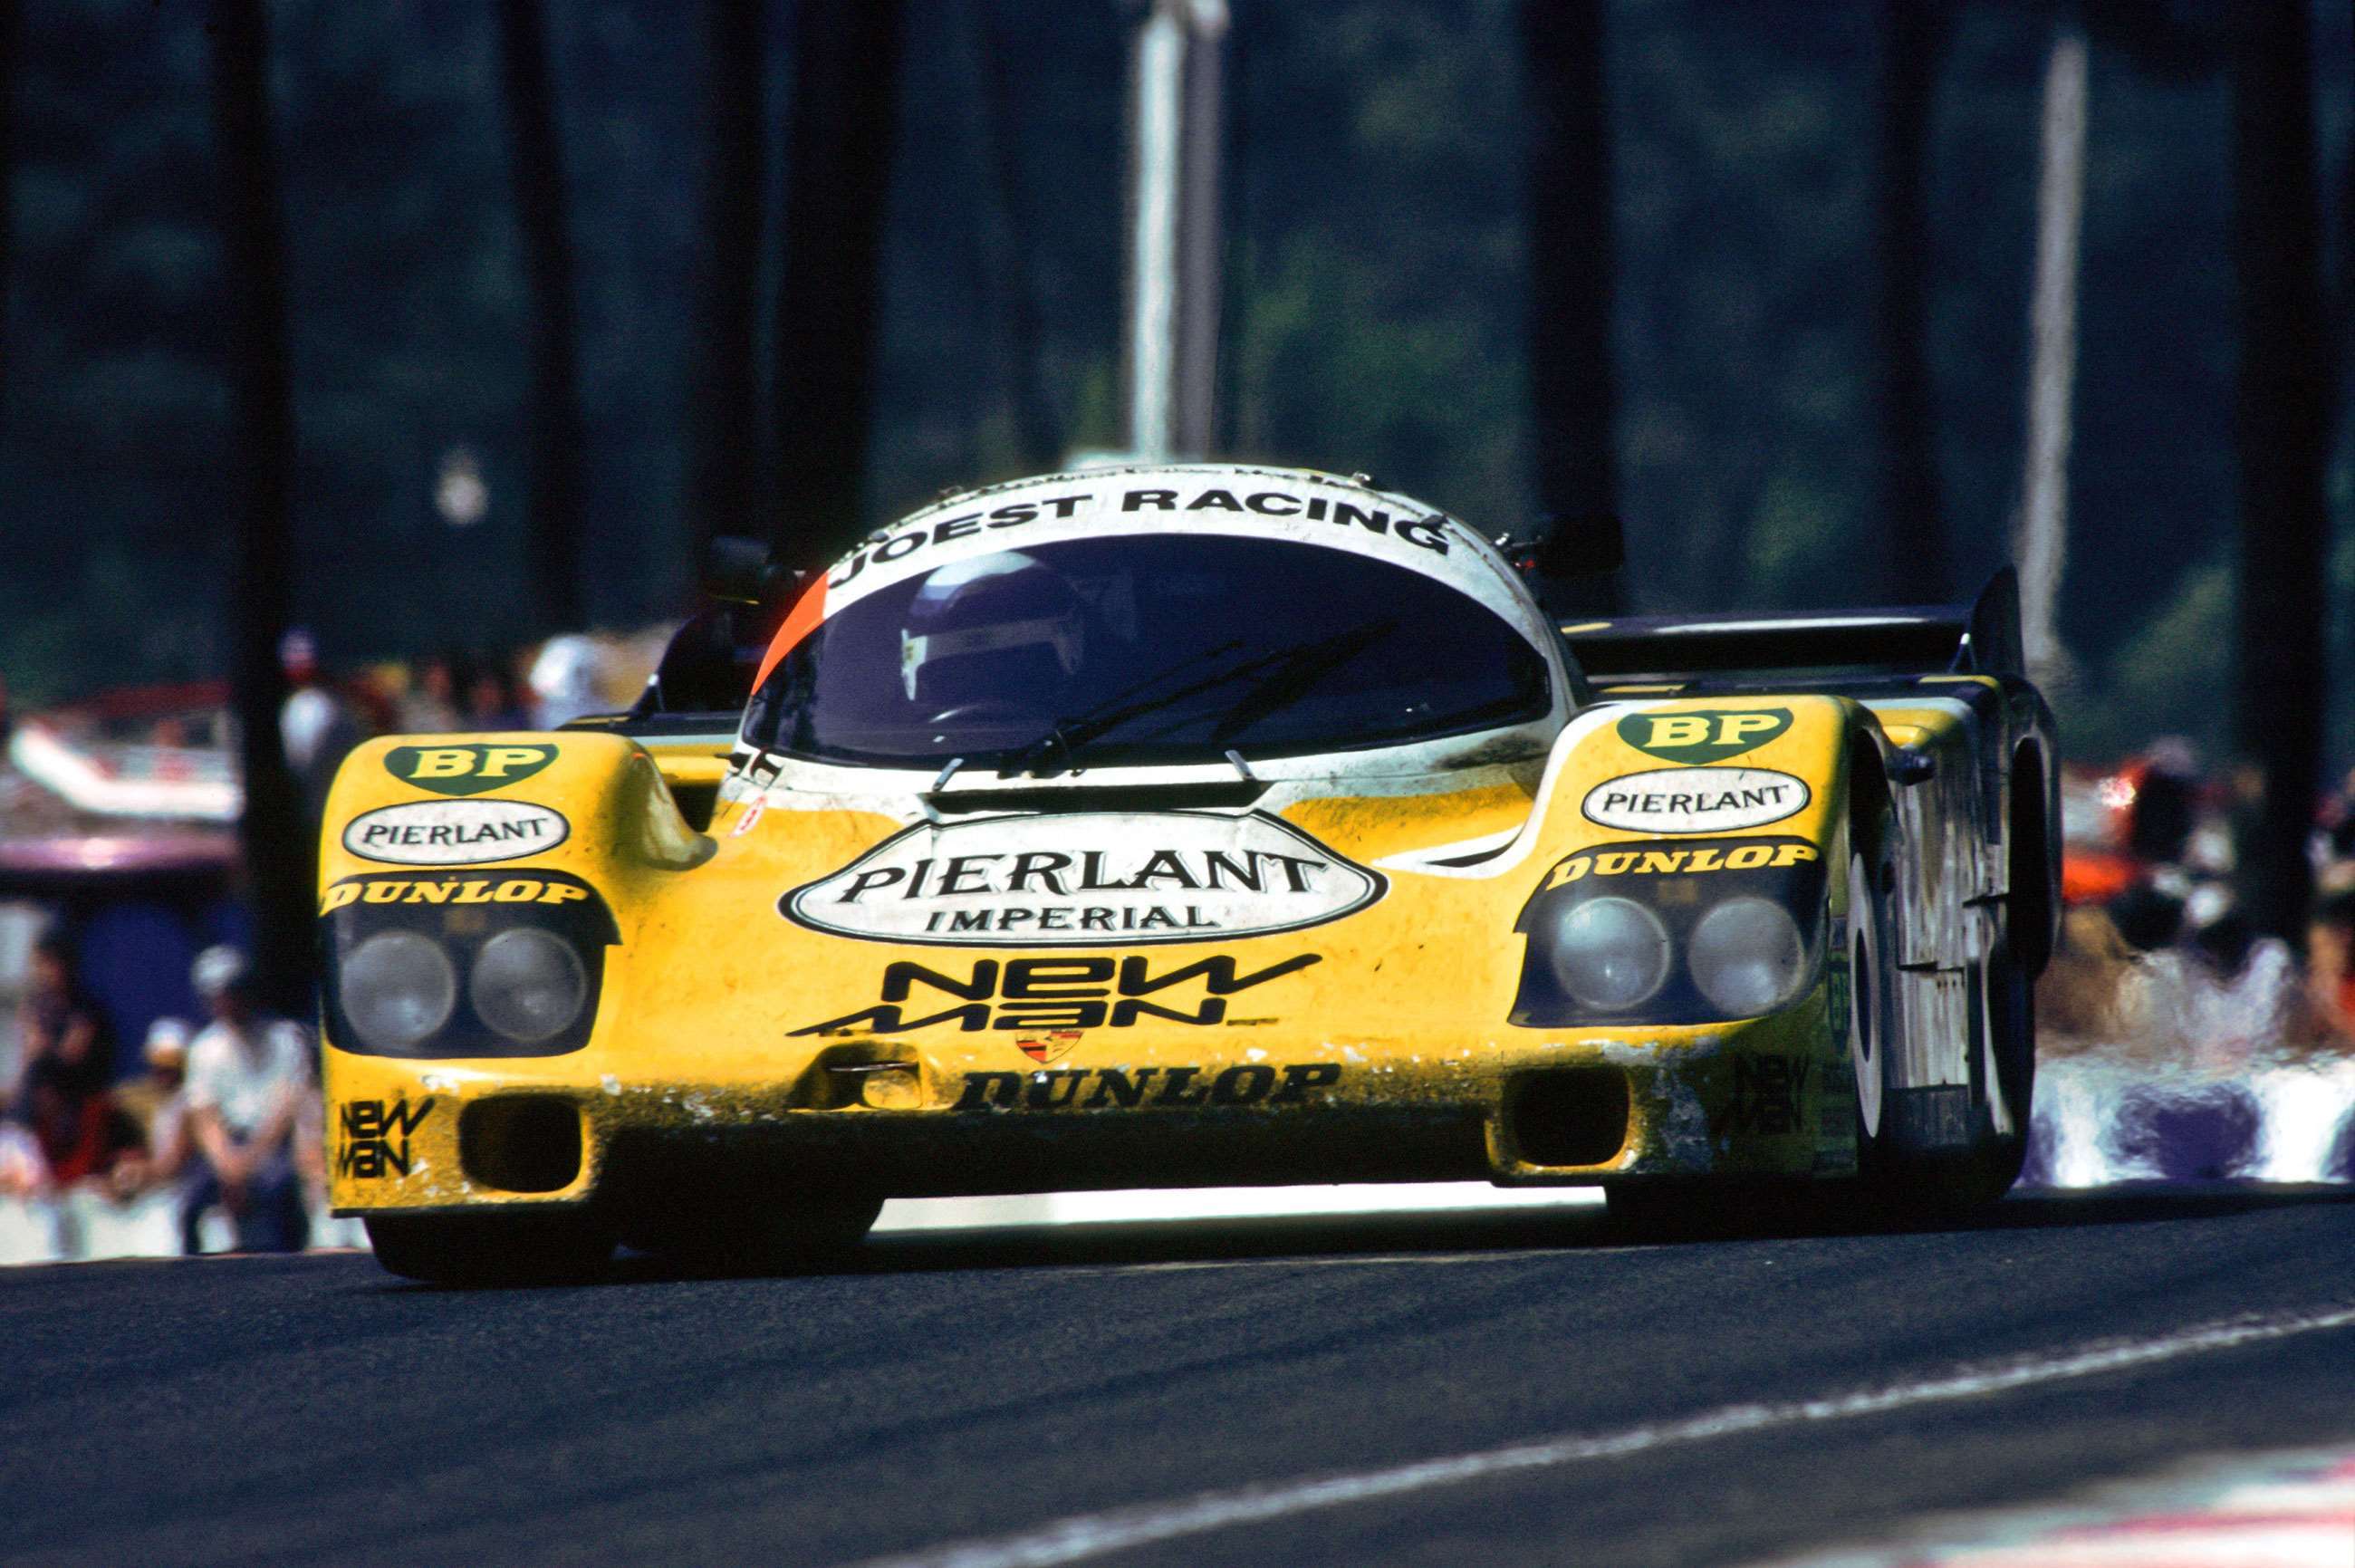 best-racing-porsches-7-porsche-956-pescarolo-ludwig-le-mans-1984-sutton-mi-goodwood-03072020.jpg